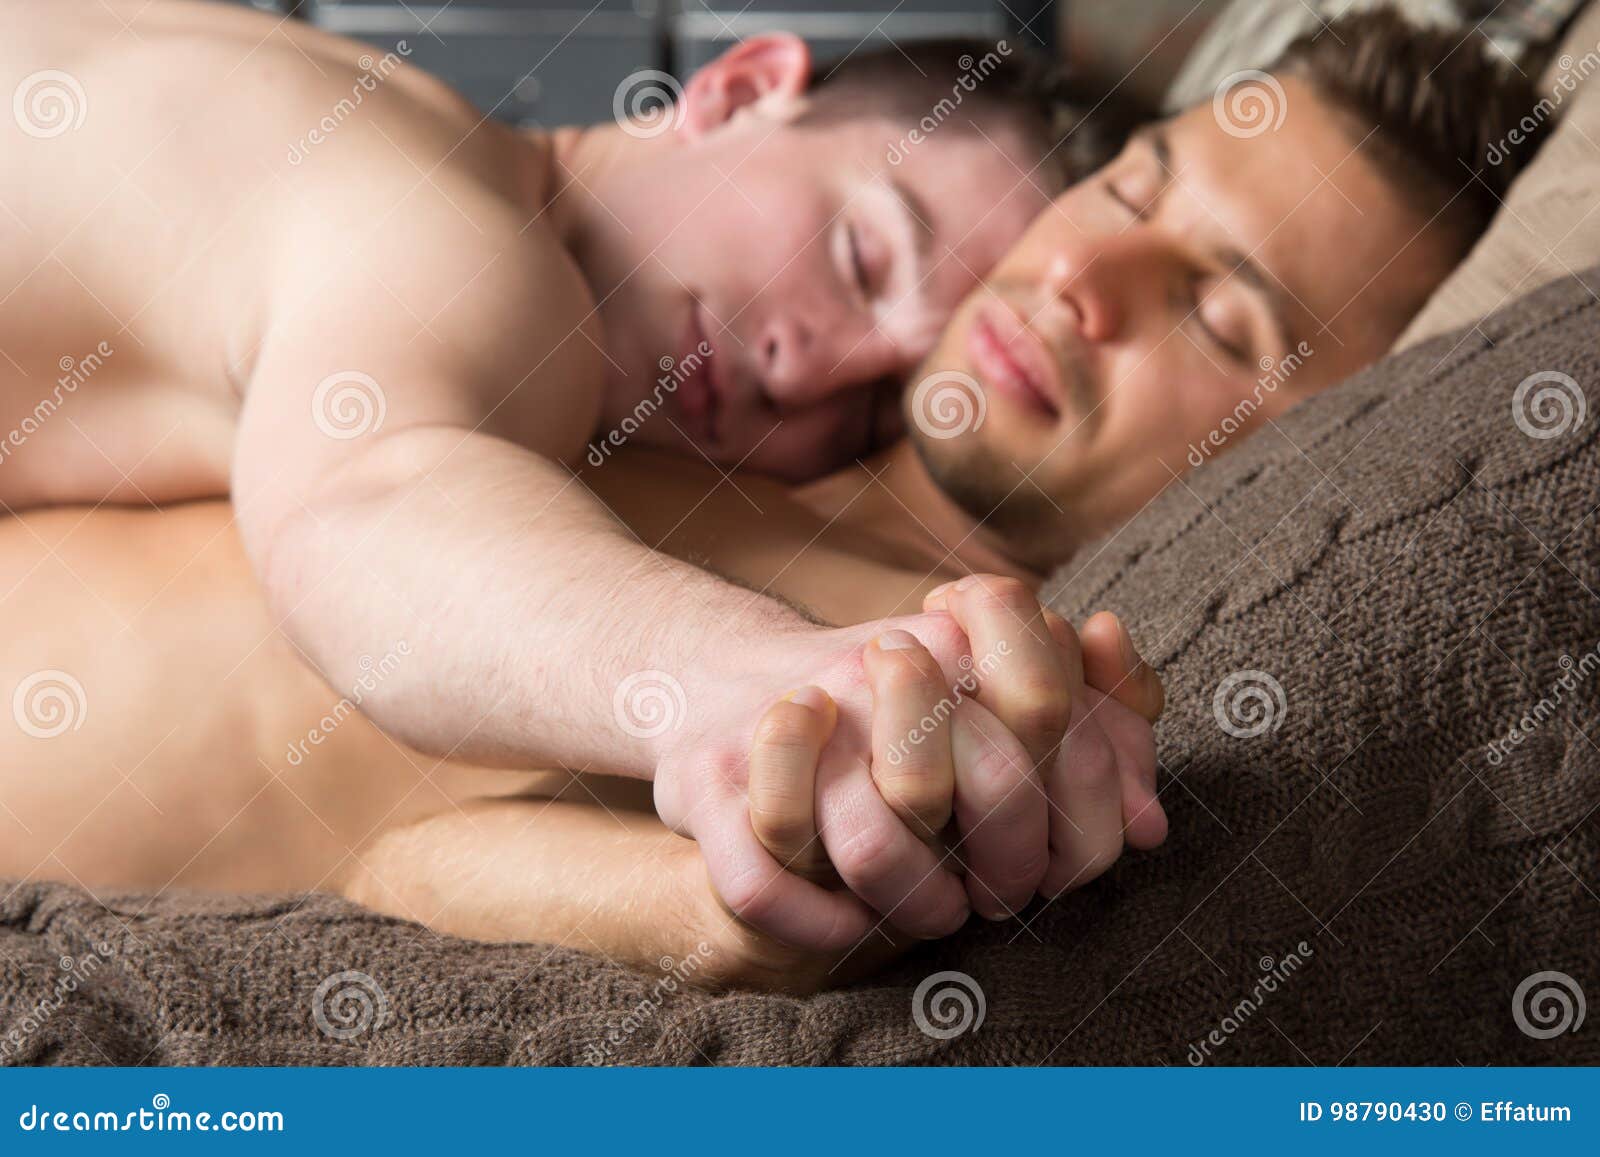 Мужчина и женщина страсть любовь постель (67 фото)